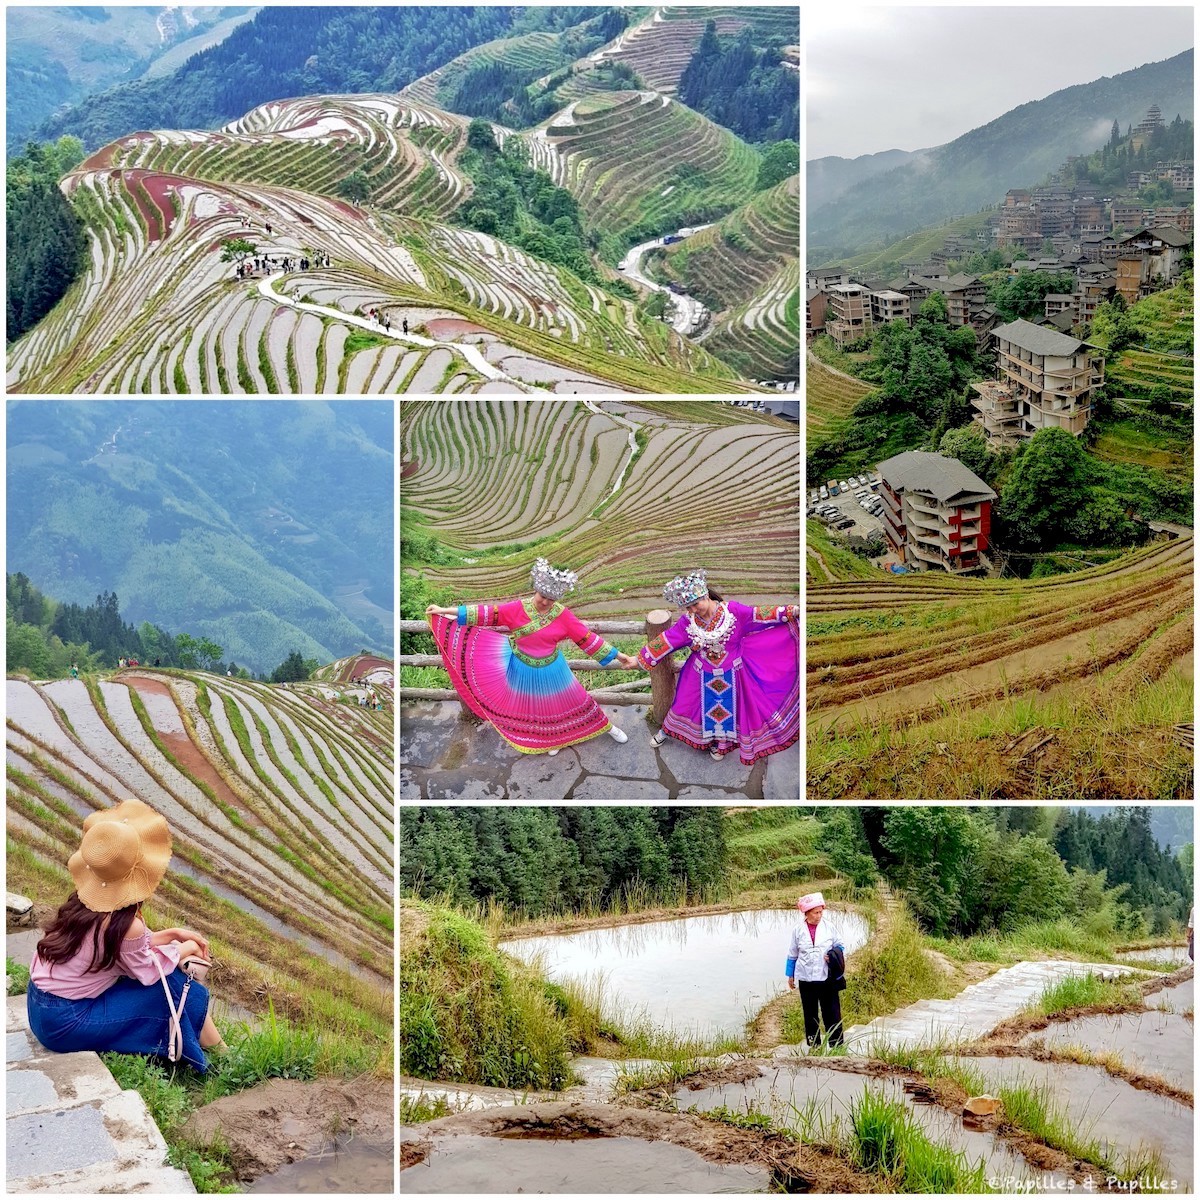 Les rizières en terrasses - Chine